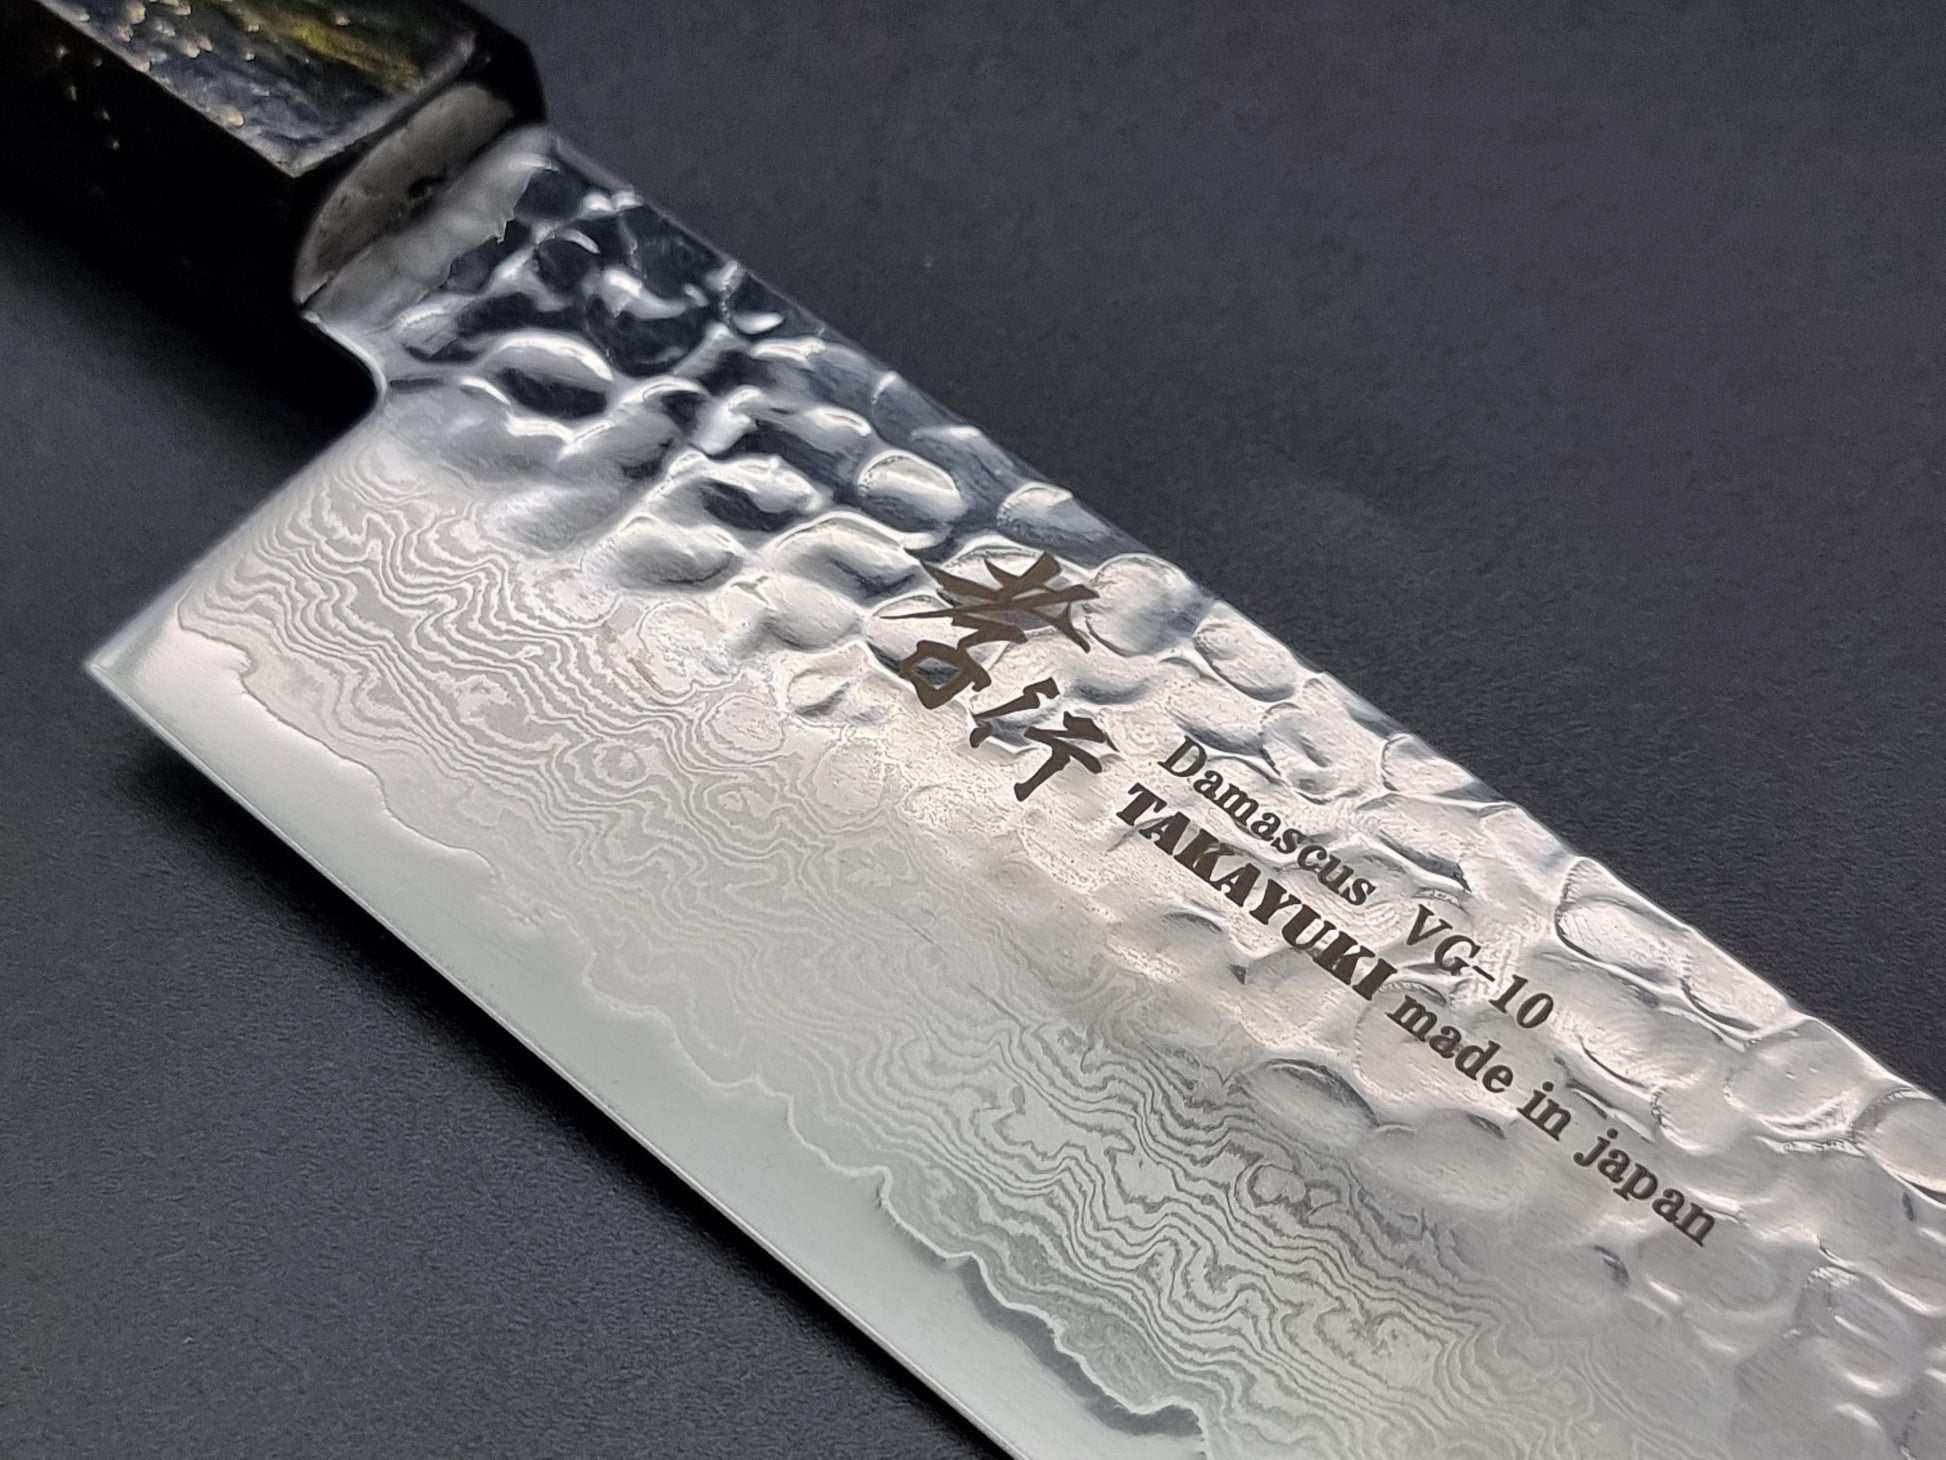 Sakai Takayuki VG10 33 Layer Hammered Damascus 160mm Nakiri with Special Handle - The Sharp Chef